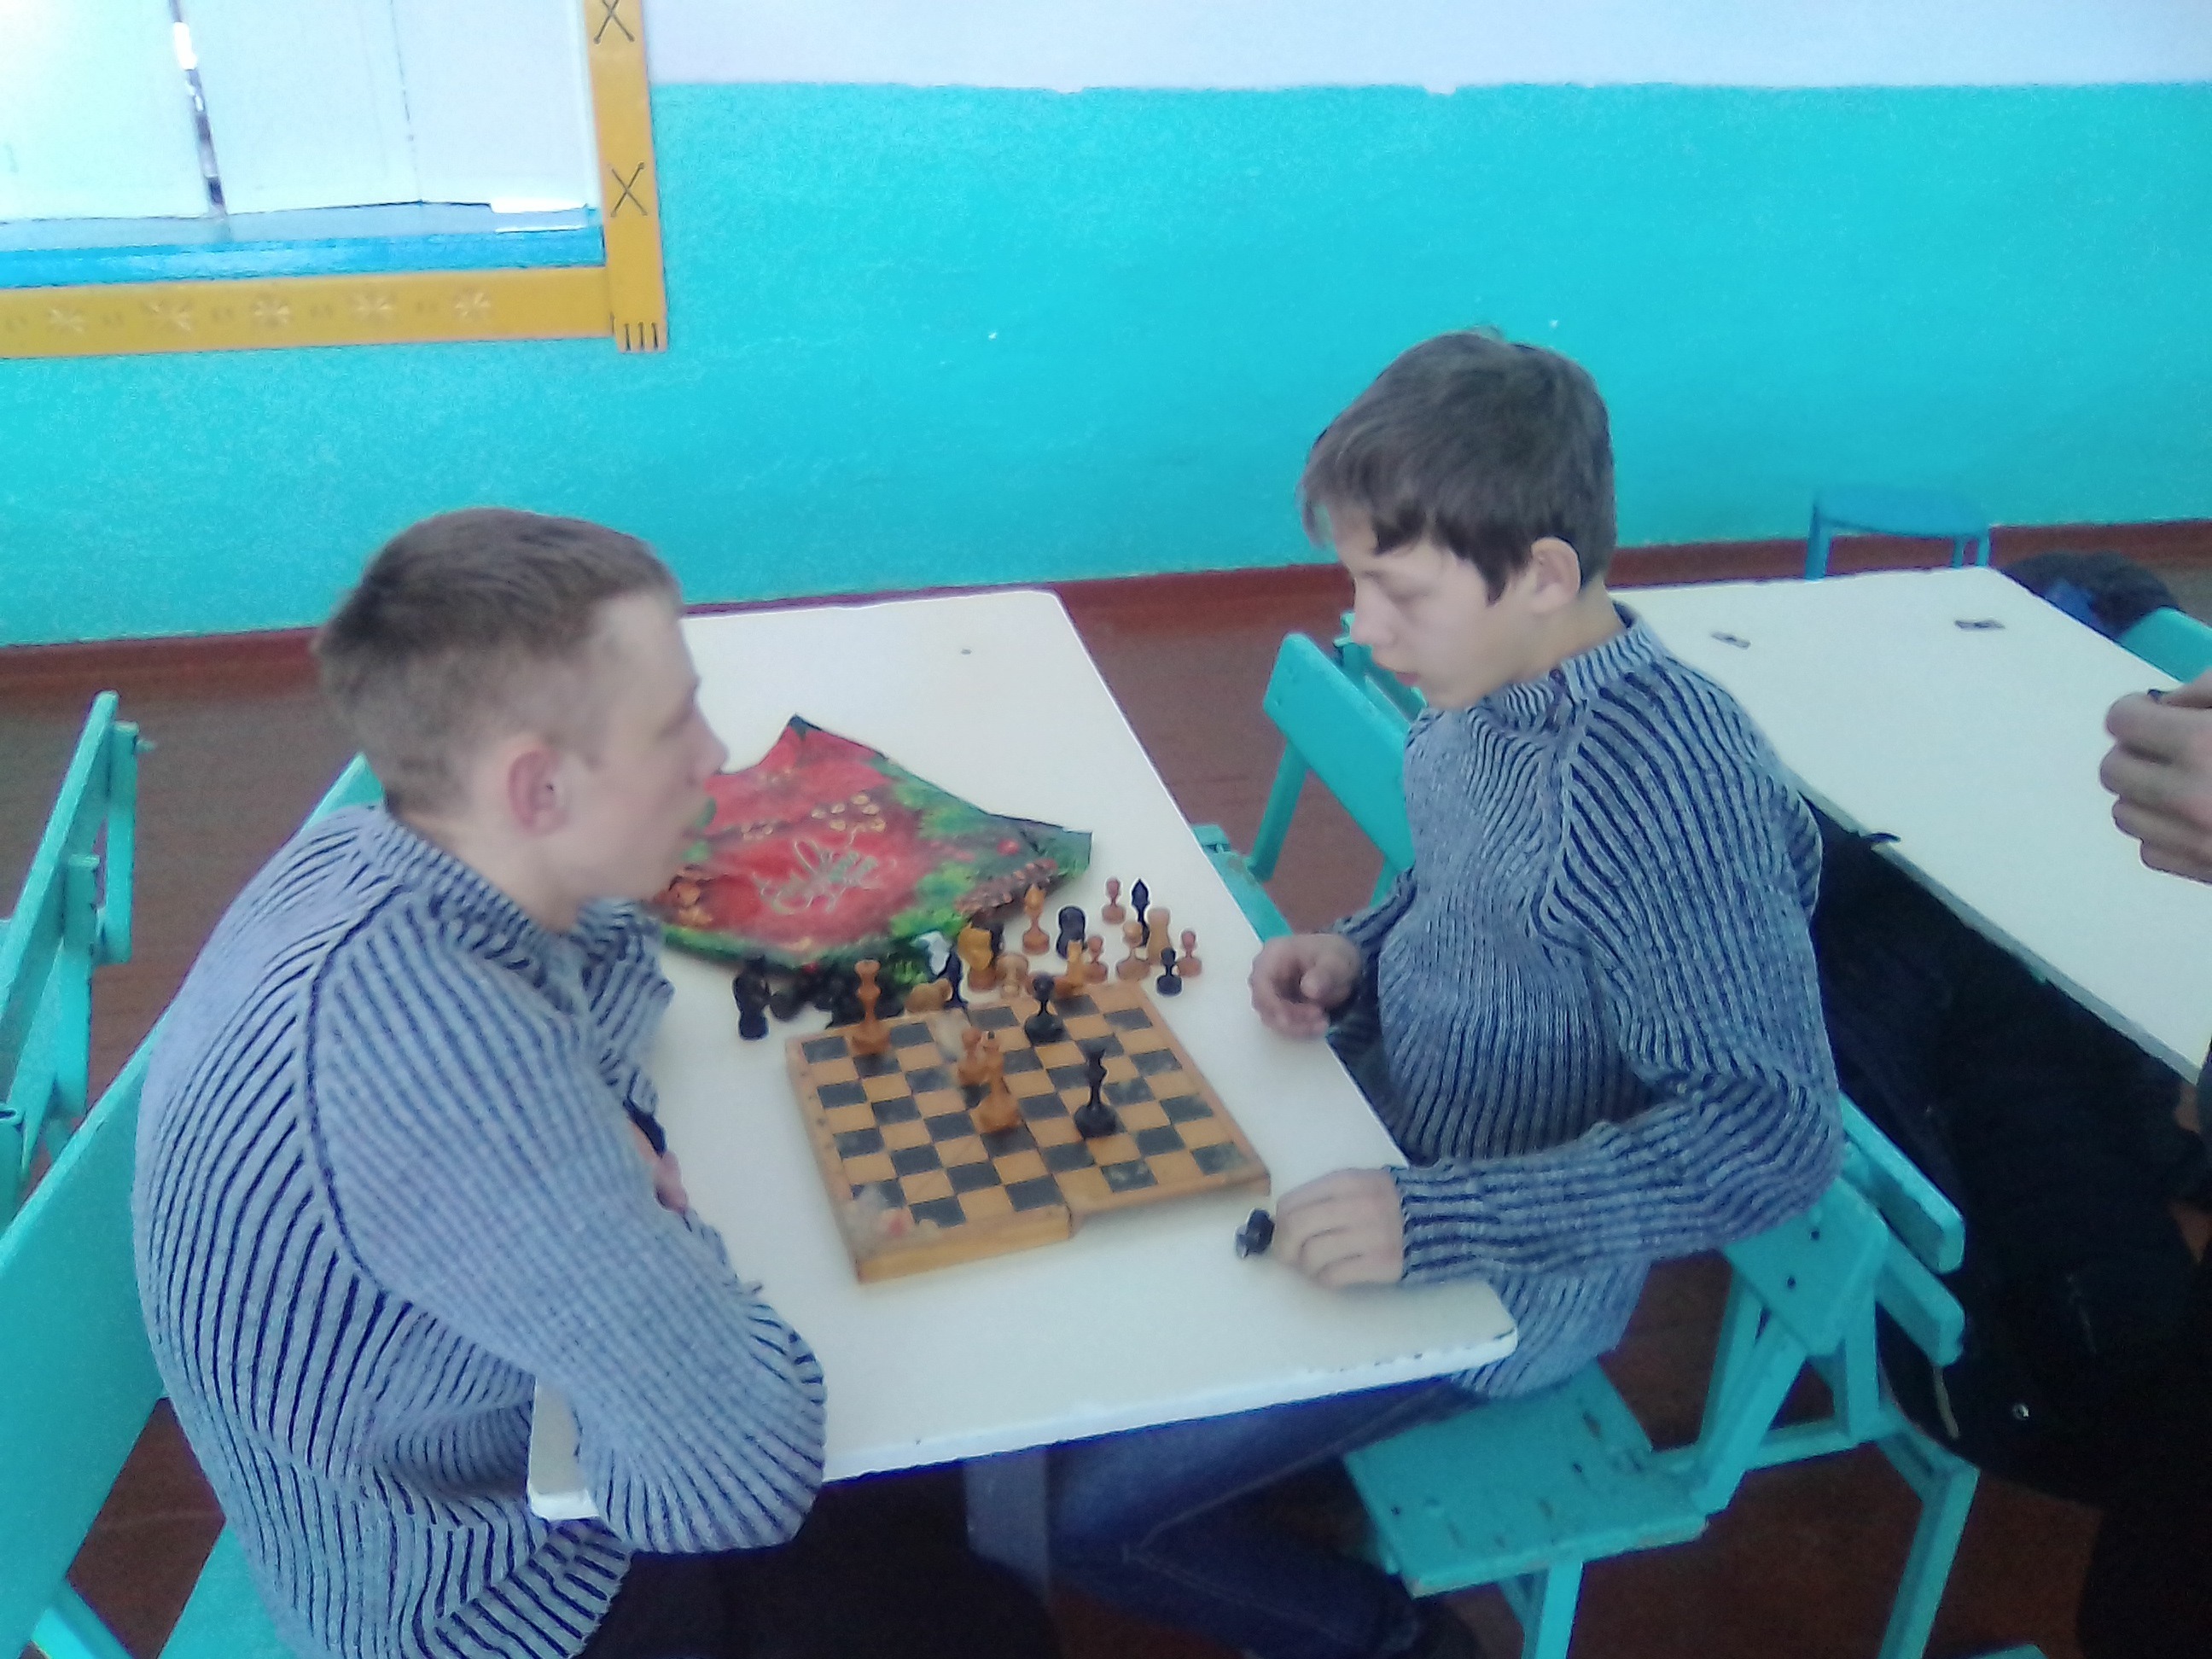 Февраль 2017г. соревнования по шахматам Новиков Андрей - Скажутин Даниил